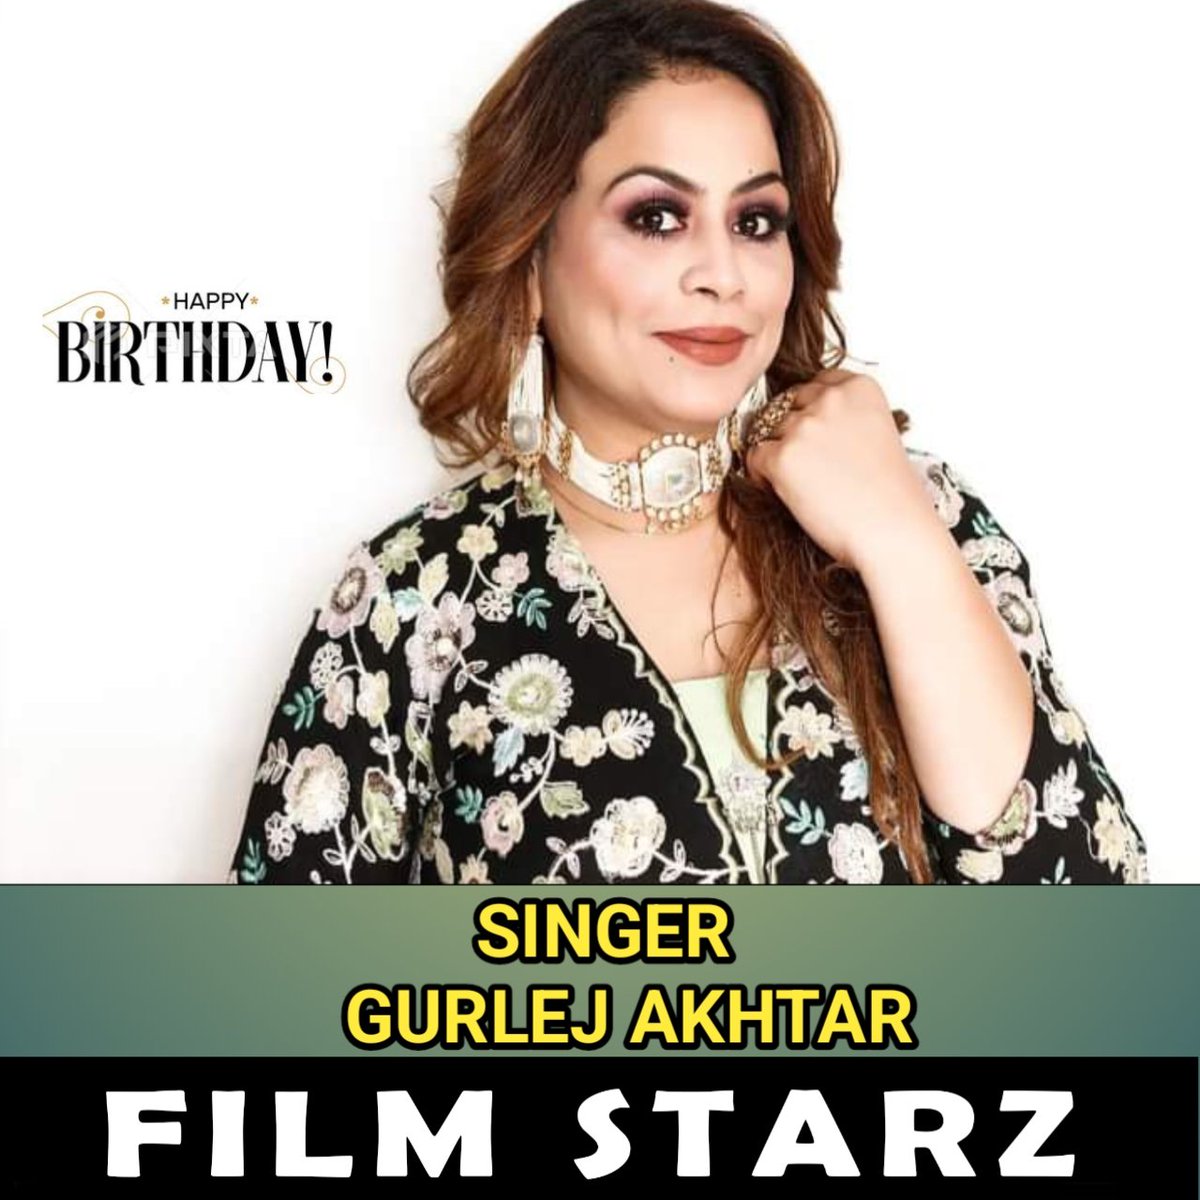 FILMS STARZ 
@GurlejAkhtar
Happy Birthday Punjabi Singer Gurlej Akhtar
#filmsstarz #happybirthday #punjabisinger #gurlejakhtar #muskanakhtar #todaybirthday